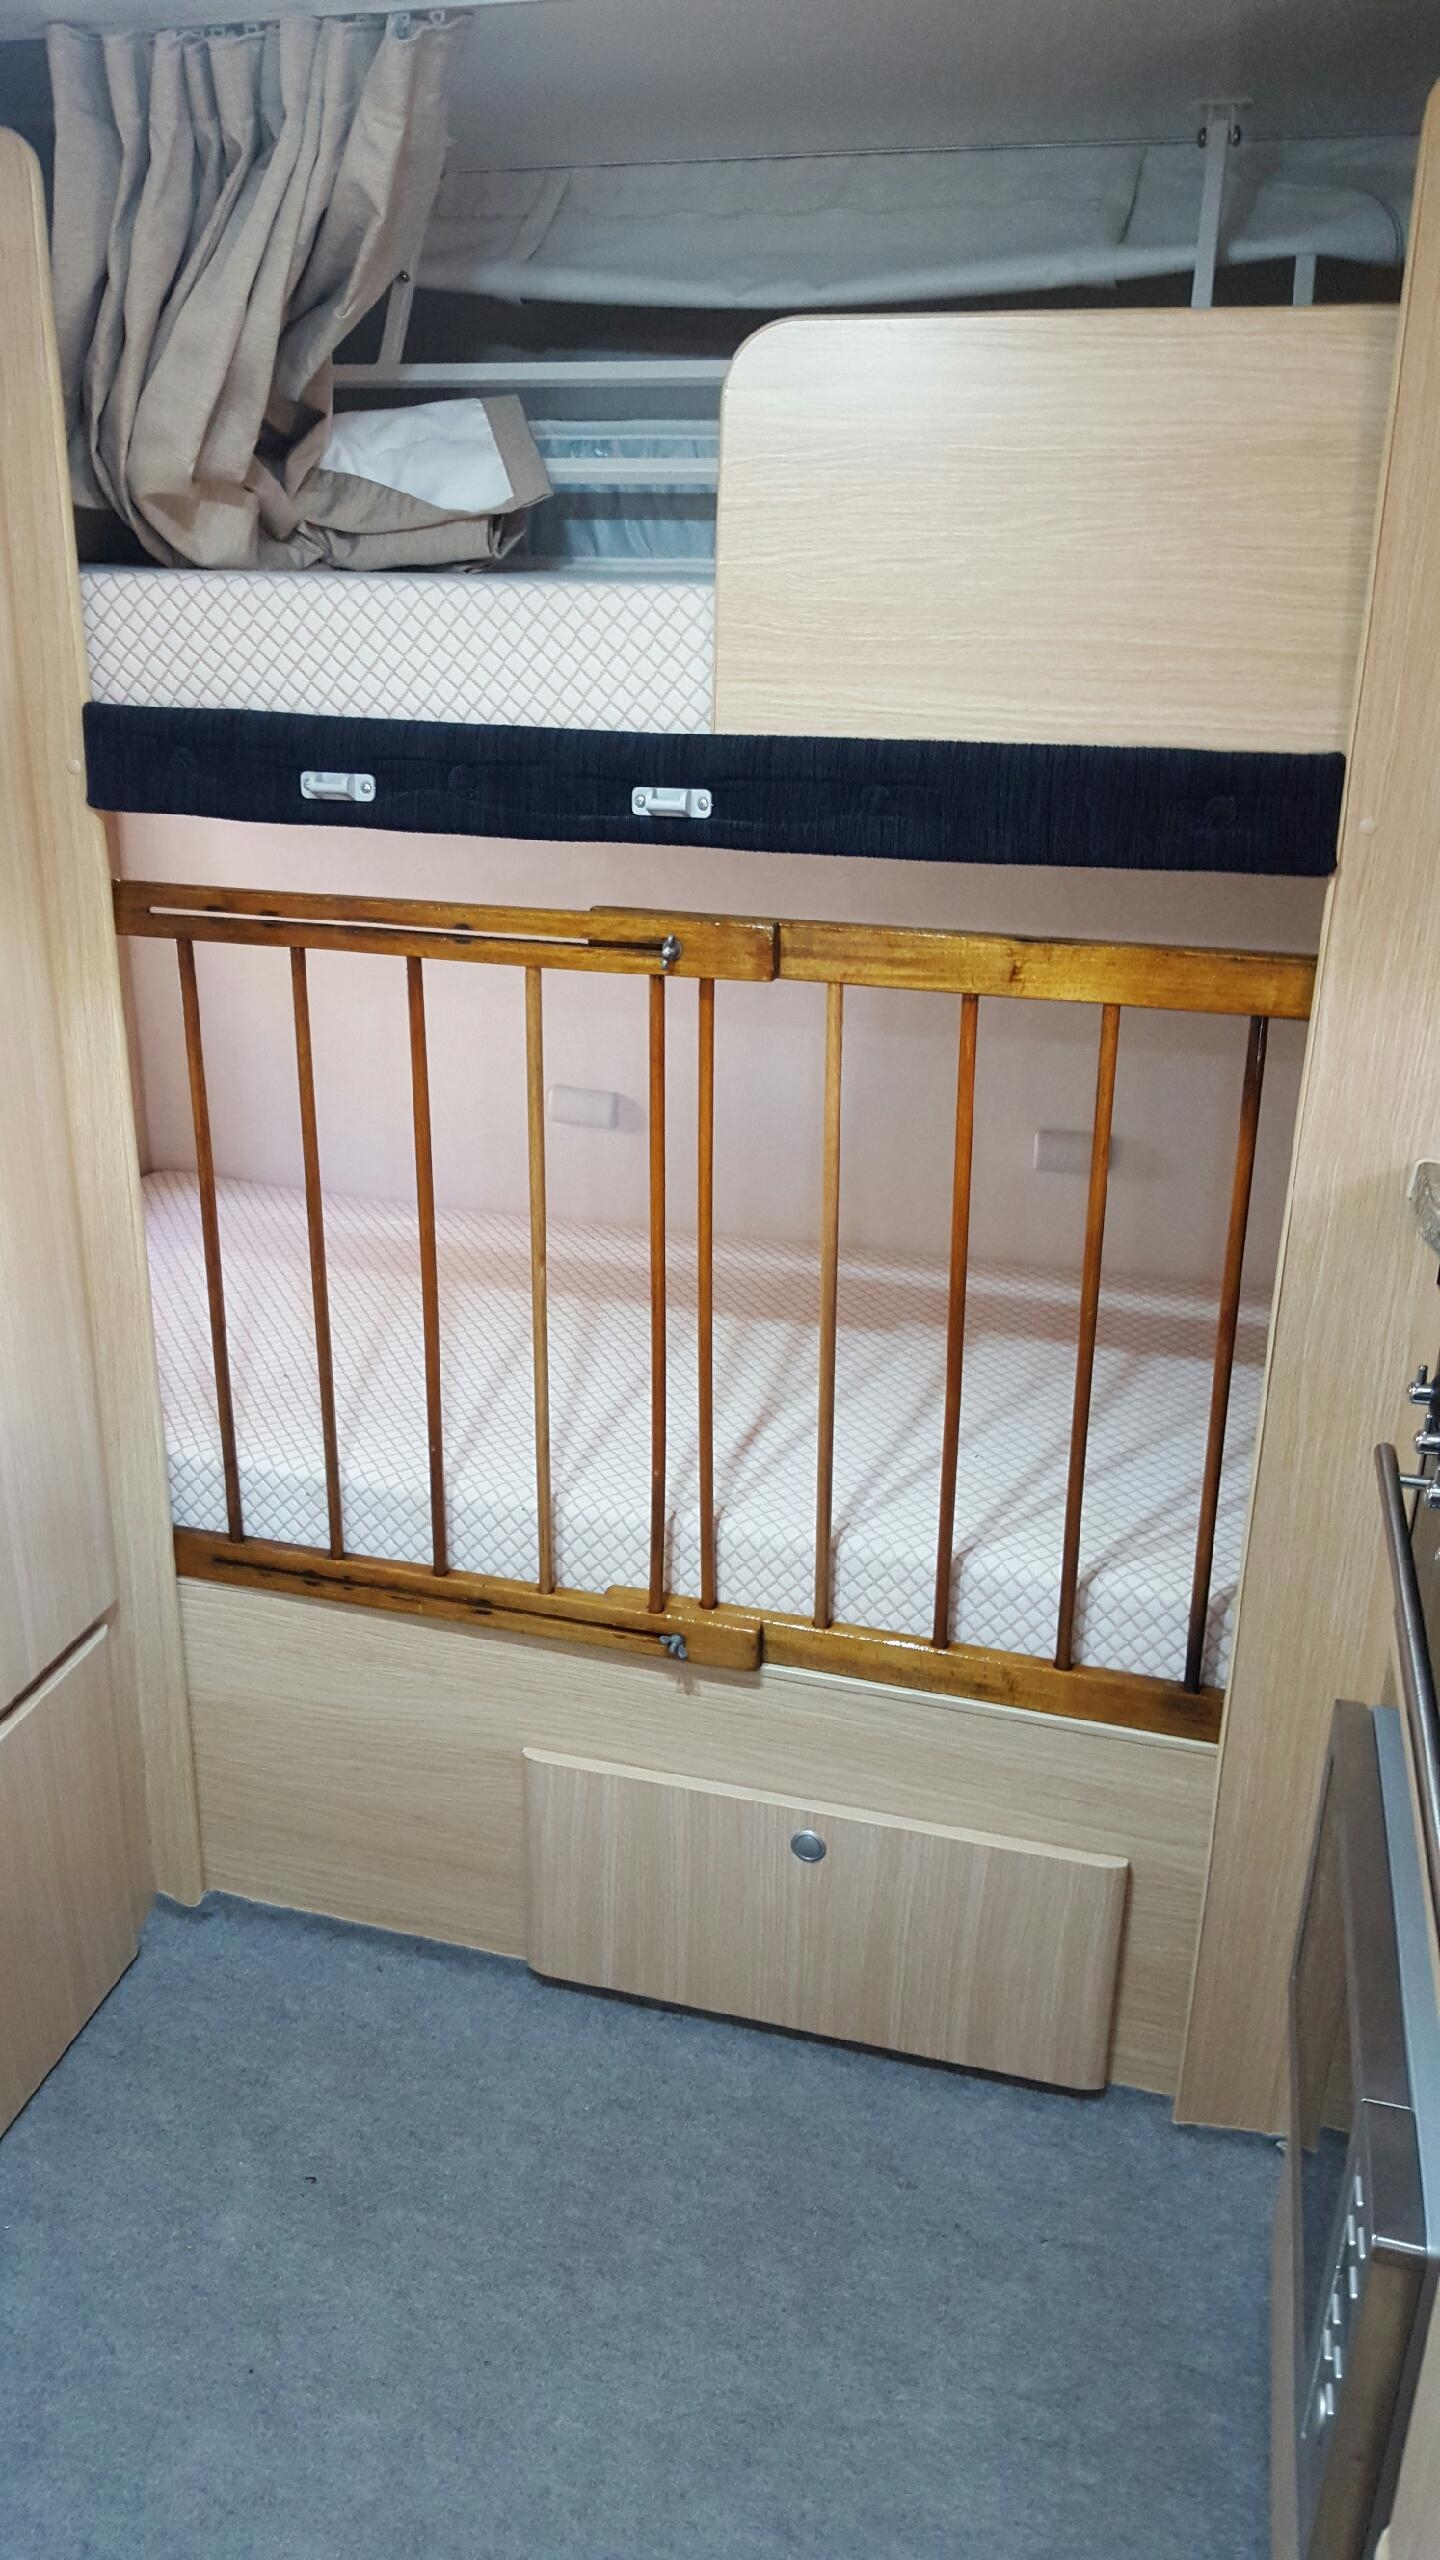 cot bunk beds